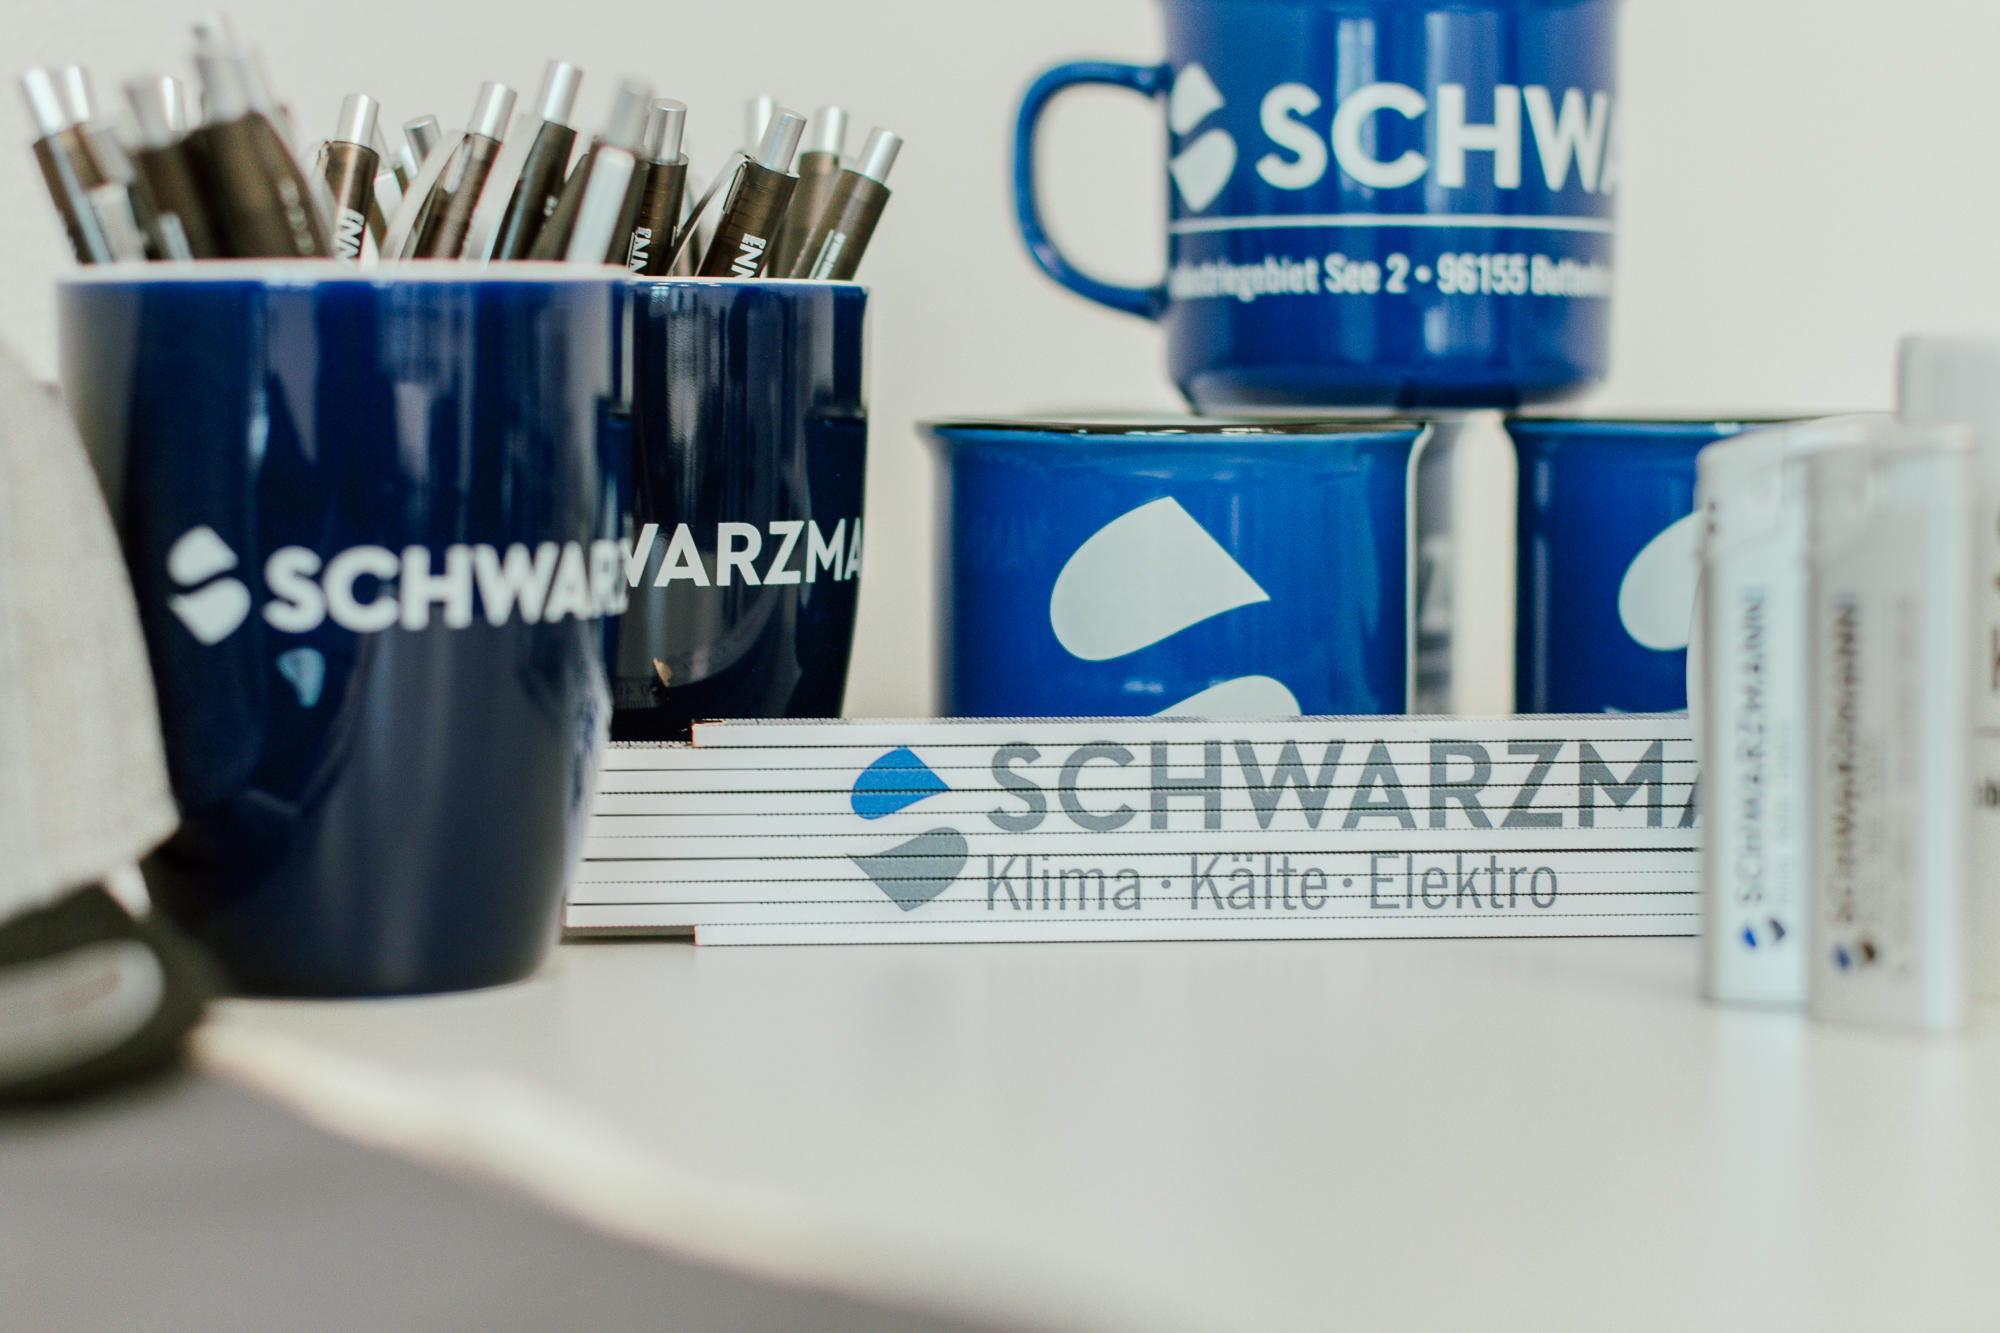 Schwarzmann GmbH, Industriegebiet See 2 in Buttenheim